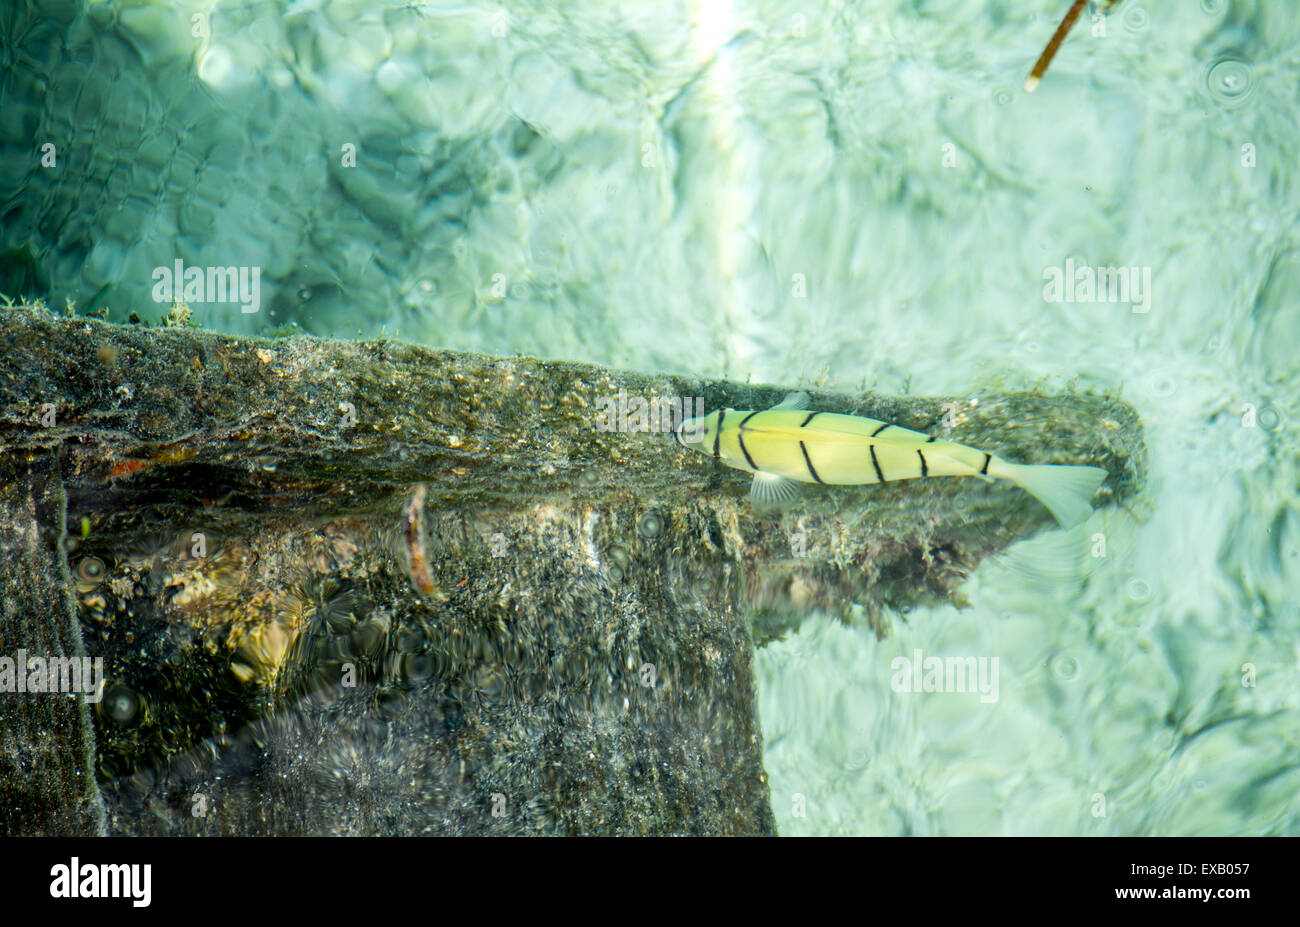 L'alimentation des poissons tropicaux jaune sur les algues en lagon peu profond de l'océan Indien aux Maldives Banque D'Images